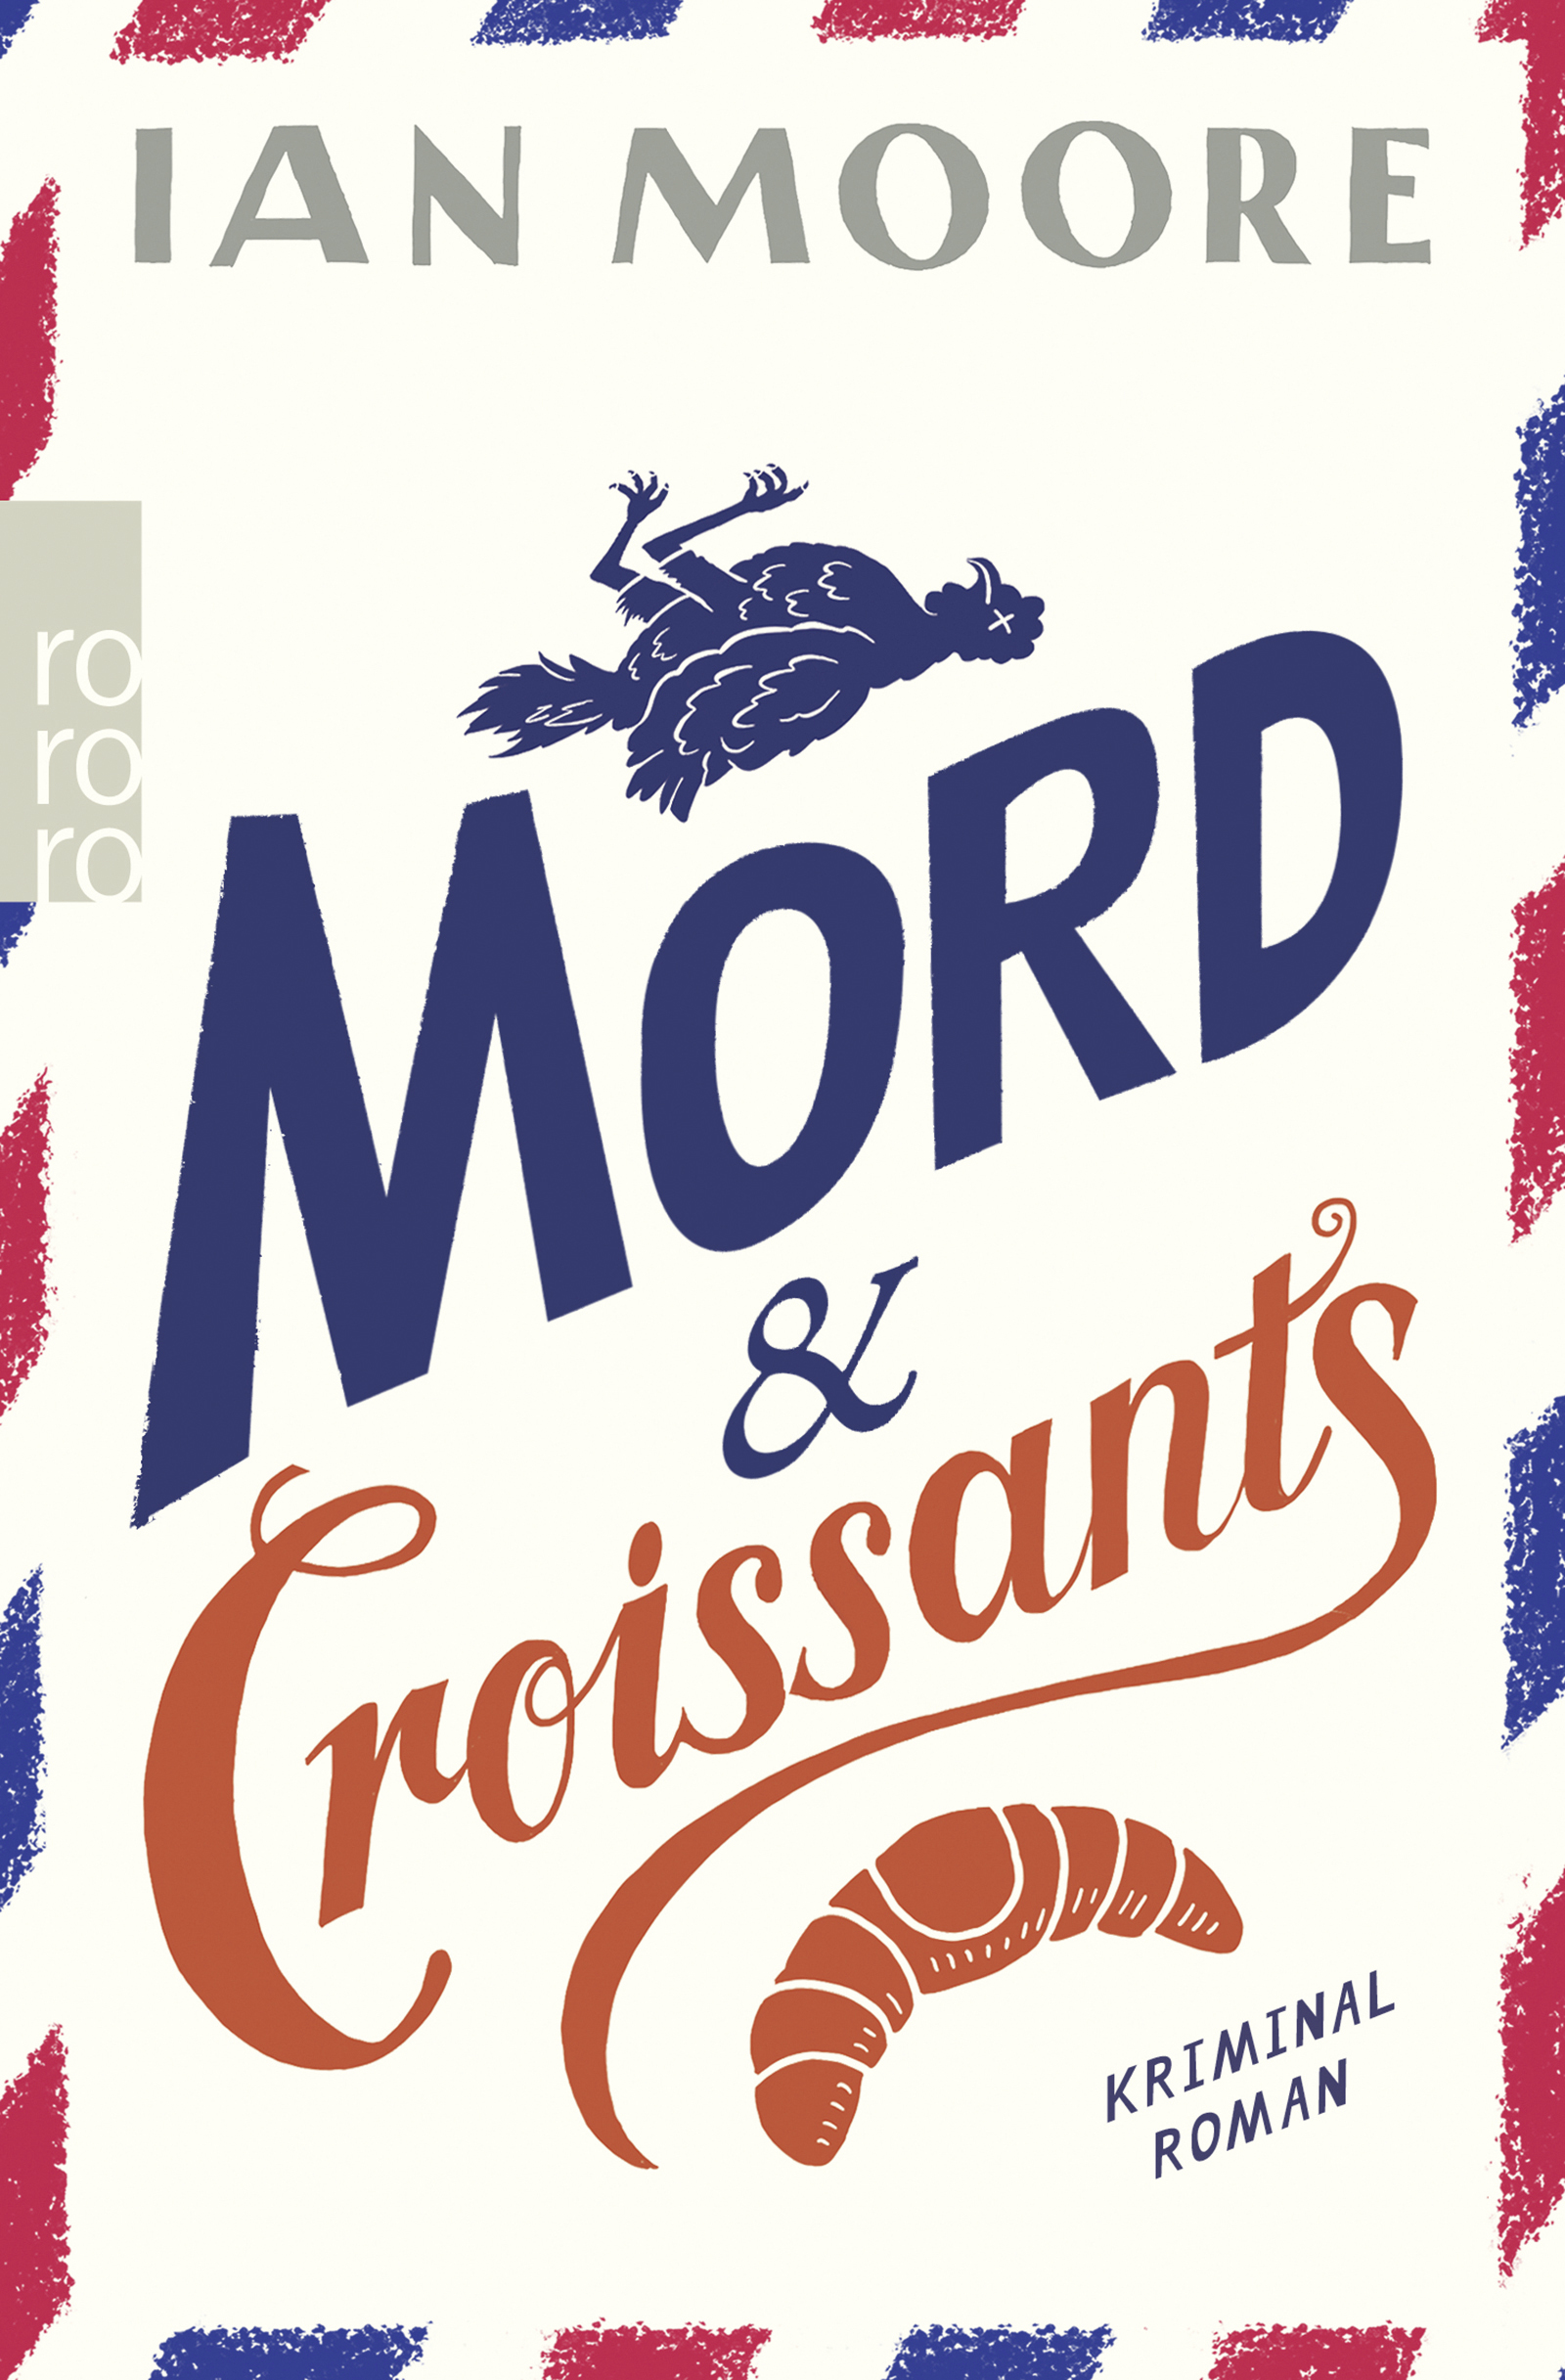 Ian Moore - Mord & Croissants